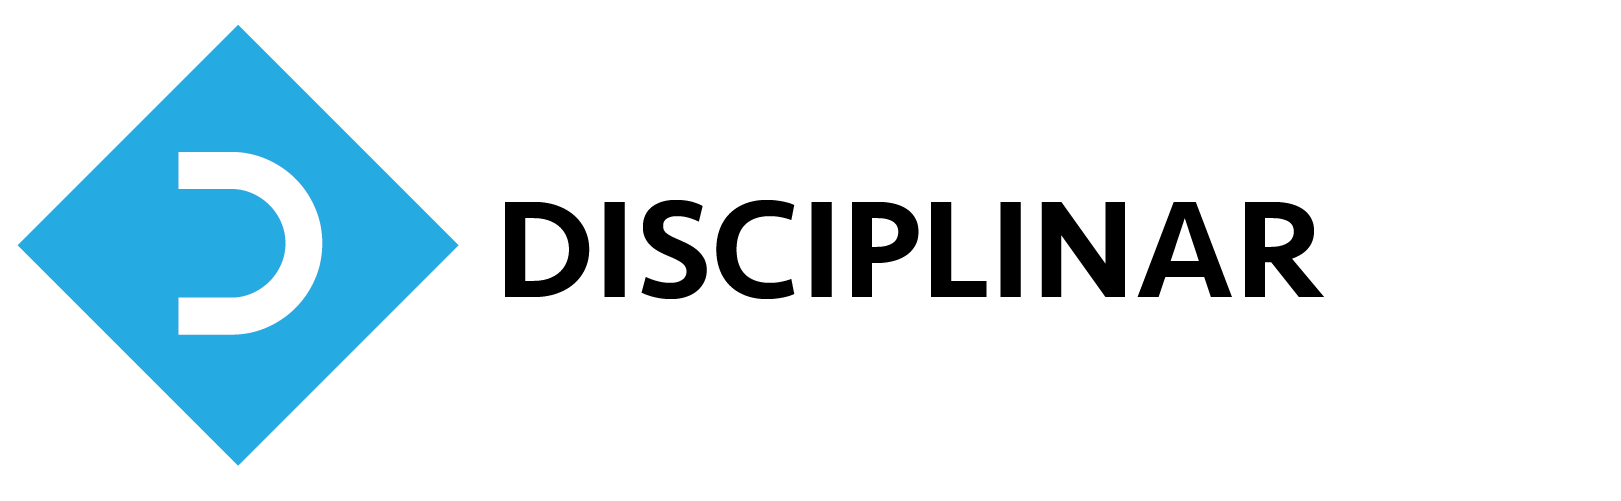 Disciplinar